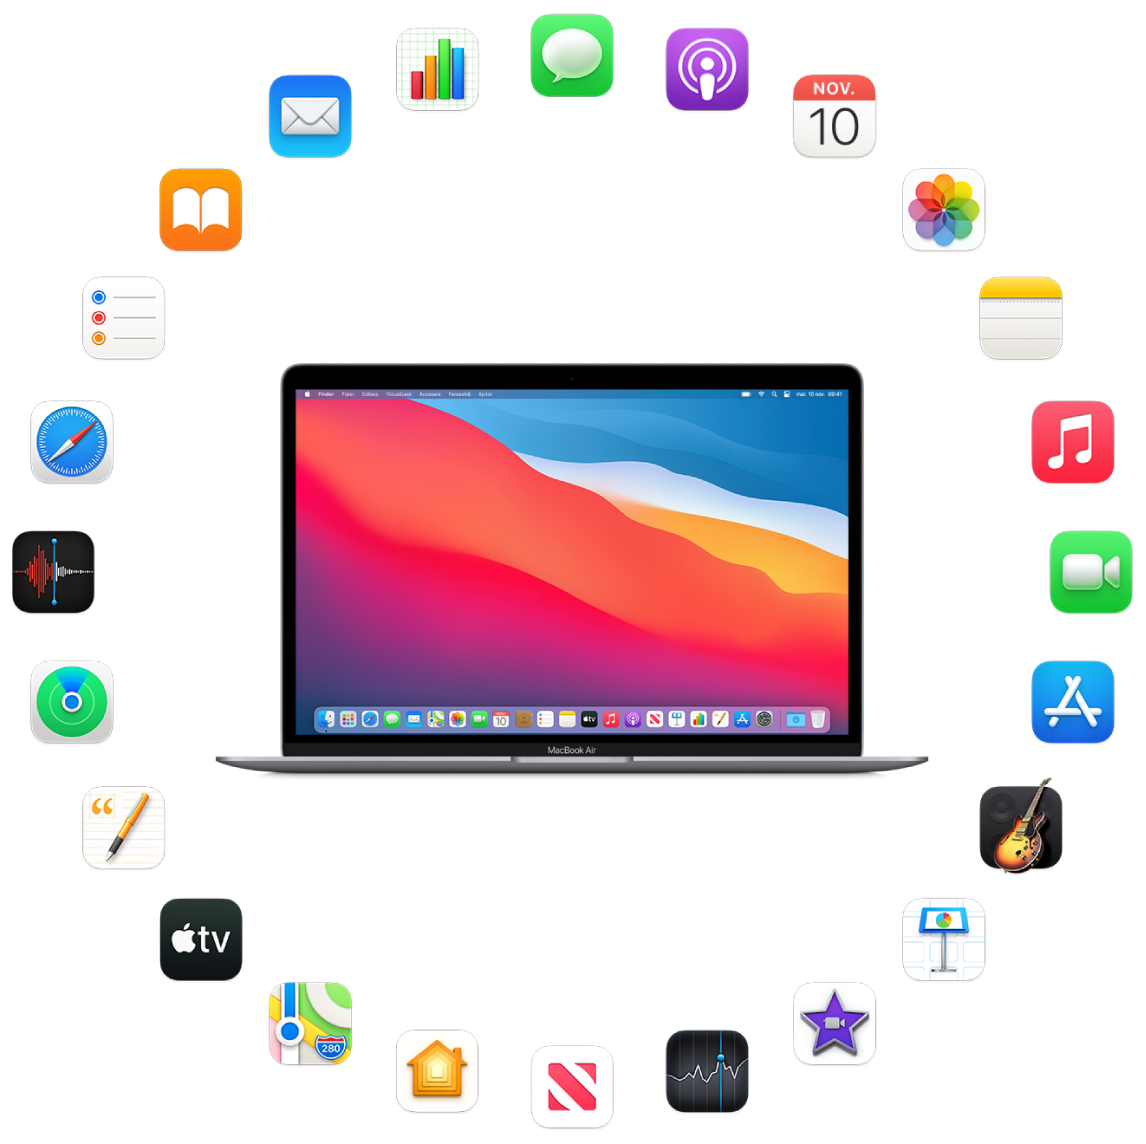 Un MacBook Air înconjurat de pictogramele aplicațiilor integrate, descrise în secțiunile următoare.